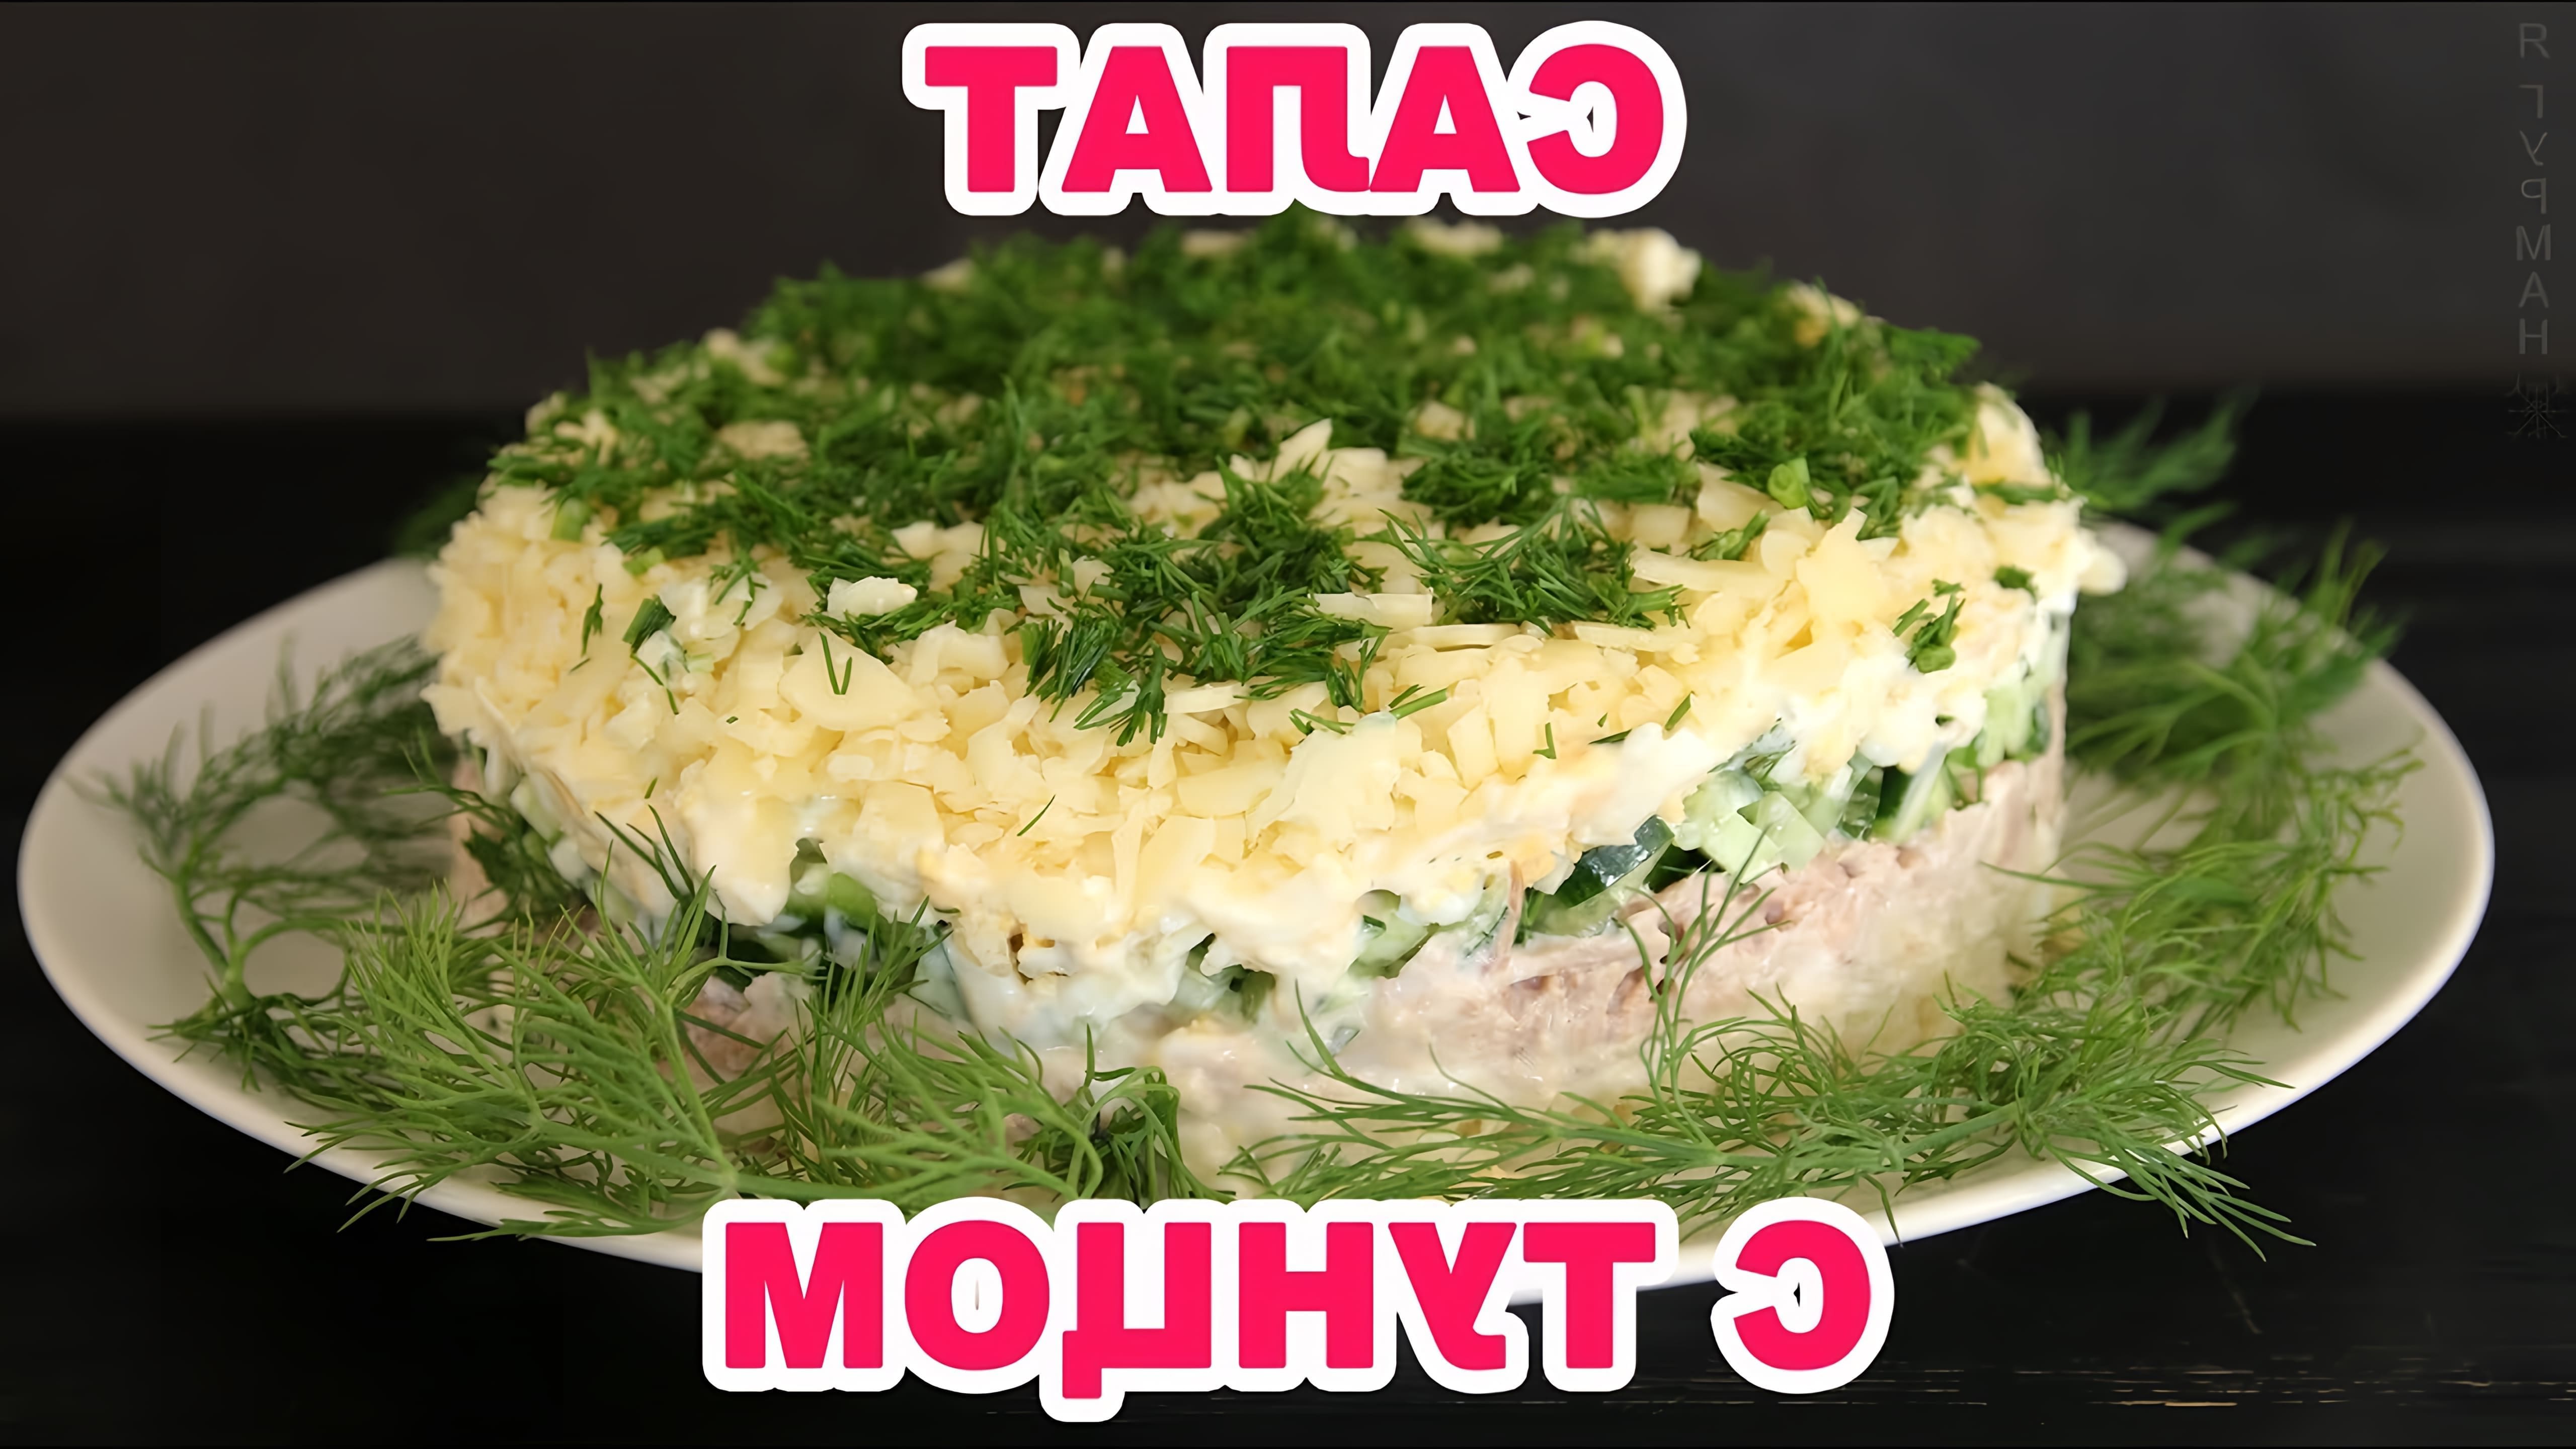 Слоеный салат с тунцом - это вкусное и питательное блюдо, которое можно приготовить на любой праздник или семейный ужин